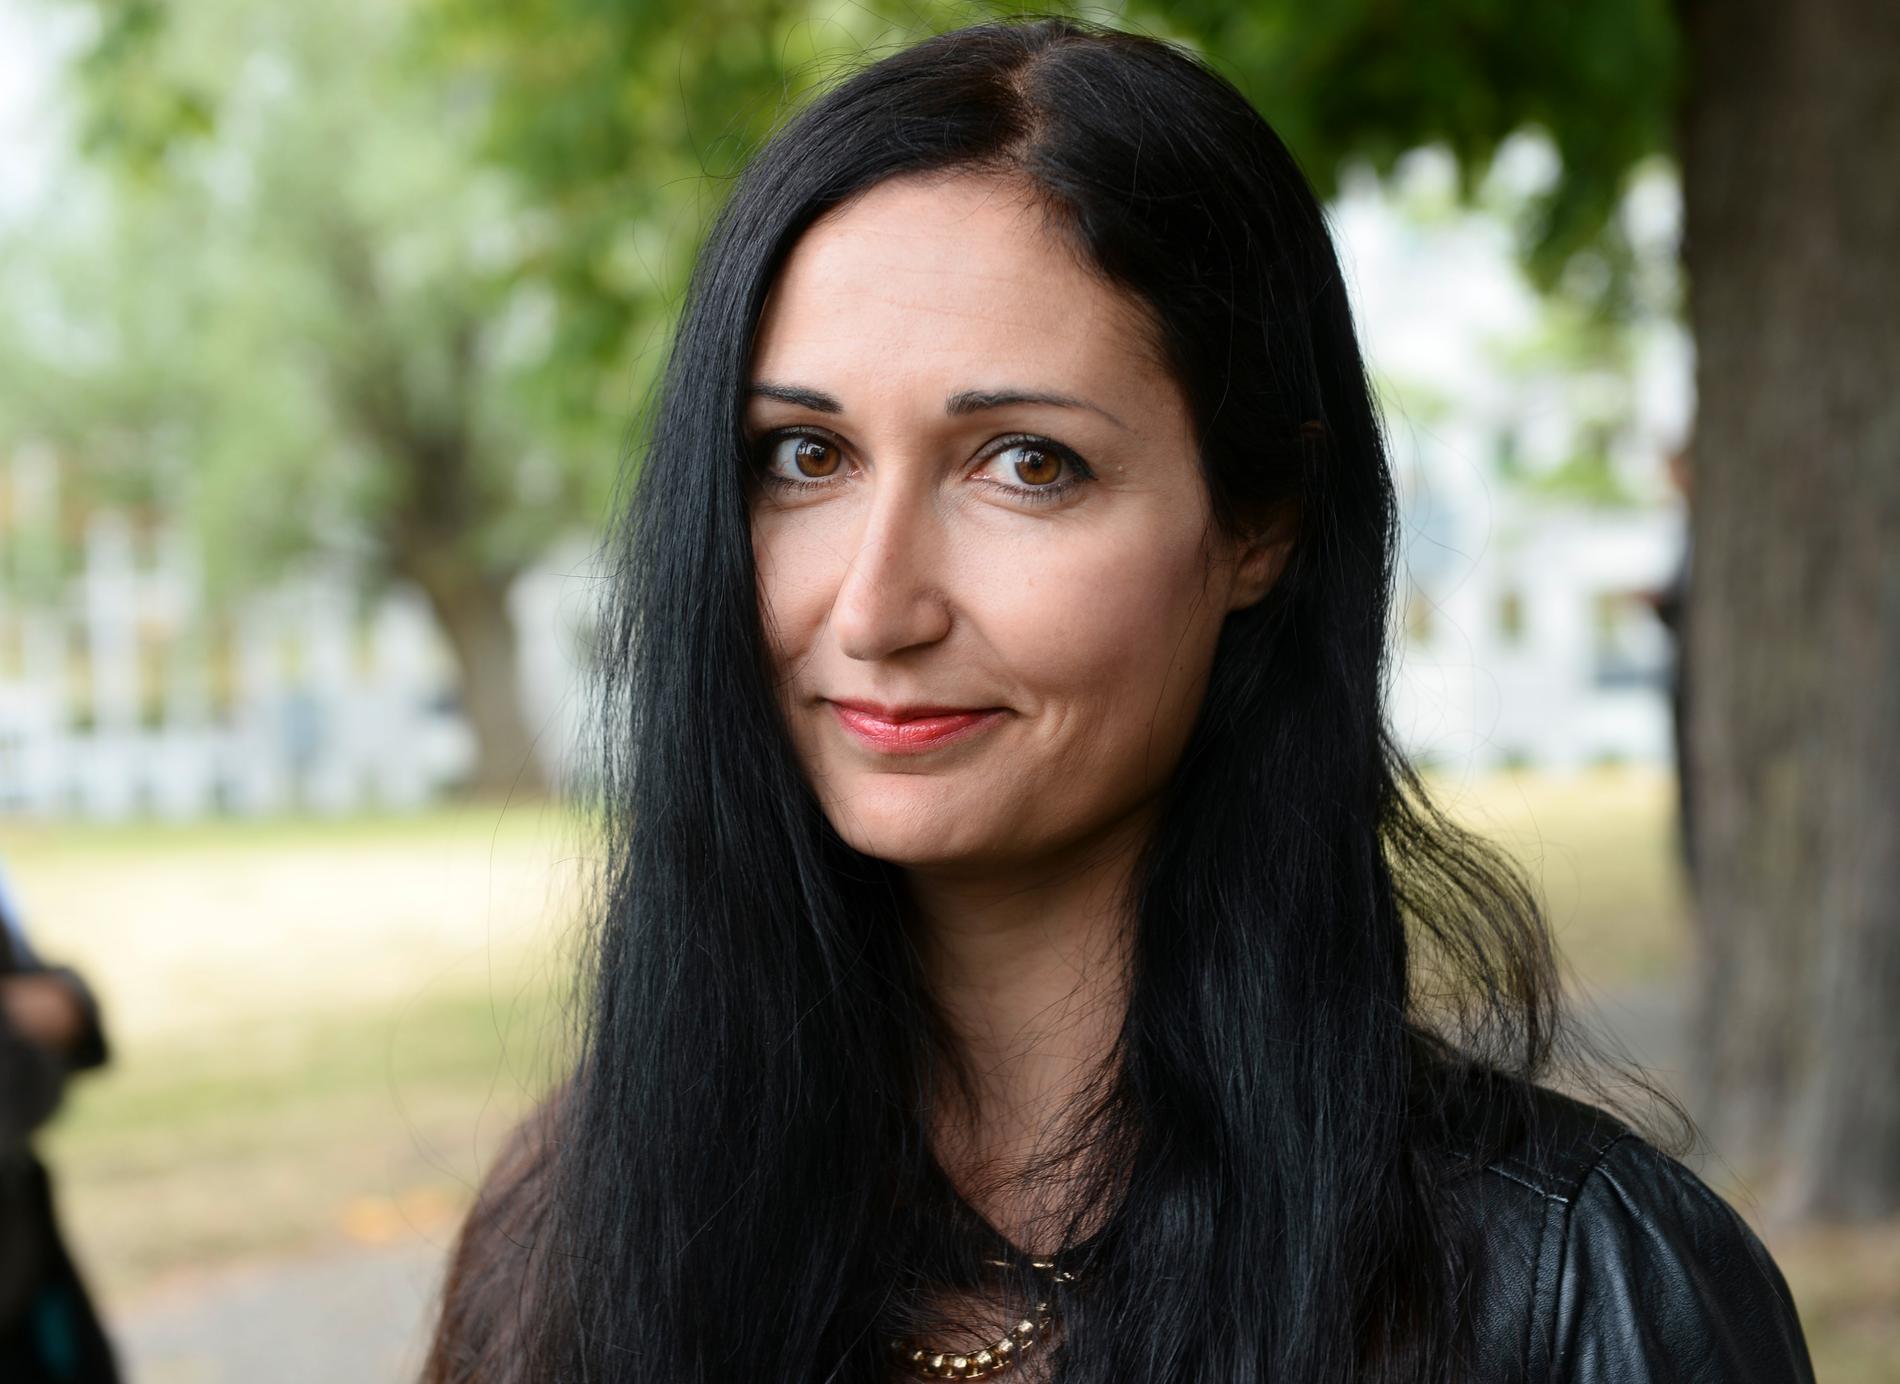 Sakine Madon, politisk chefredaktör på Upsala Nya Tidning utkommer med debattboken ”Ingenting är heligt”, ett försvar för yttrandefriheten. Carsten Palmær recenserar.